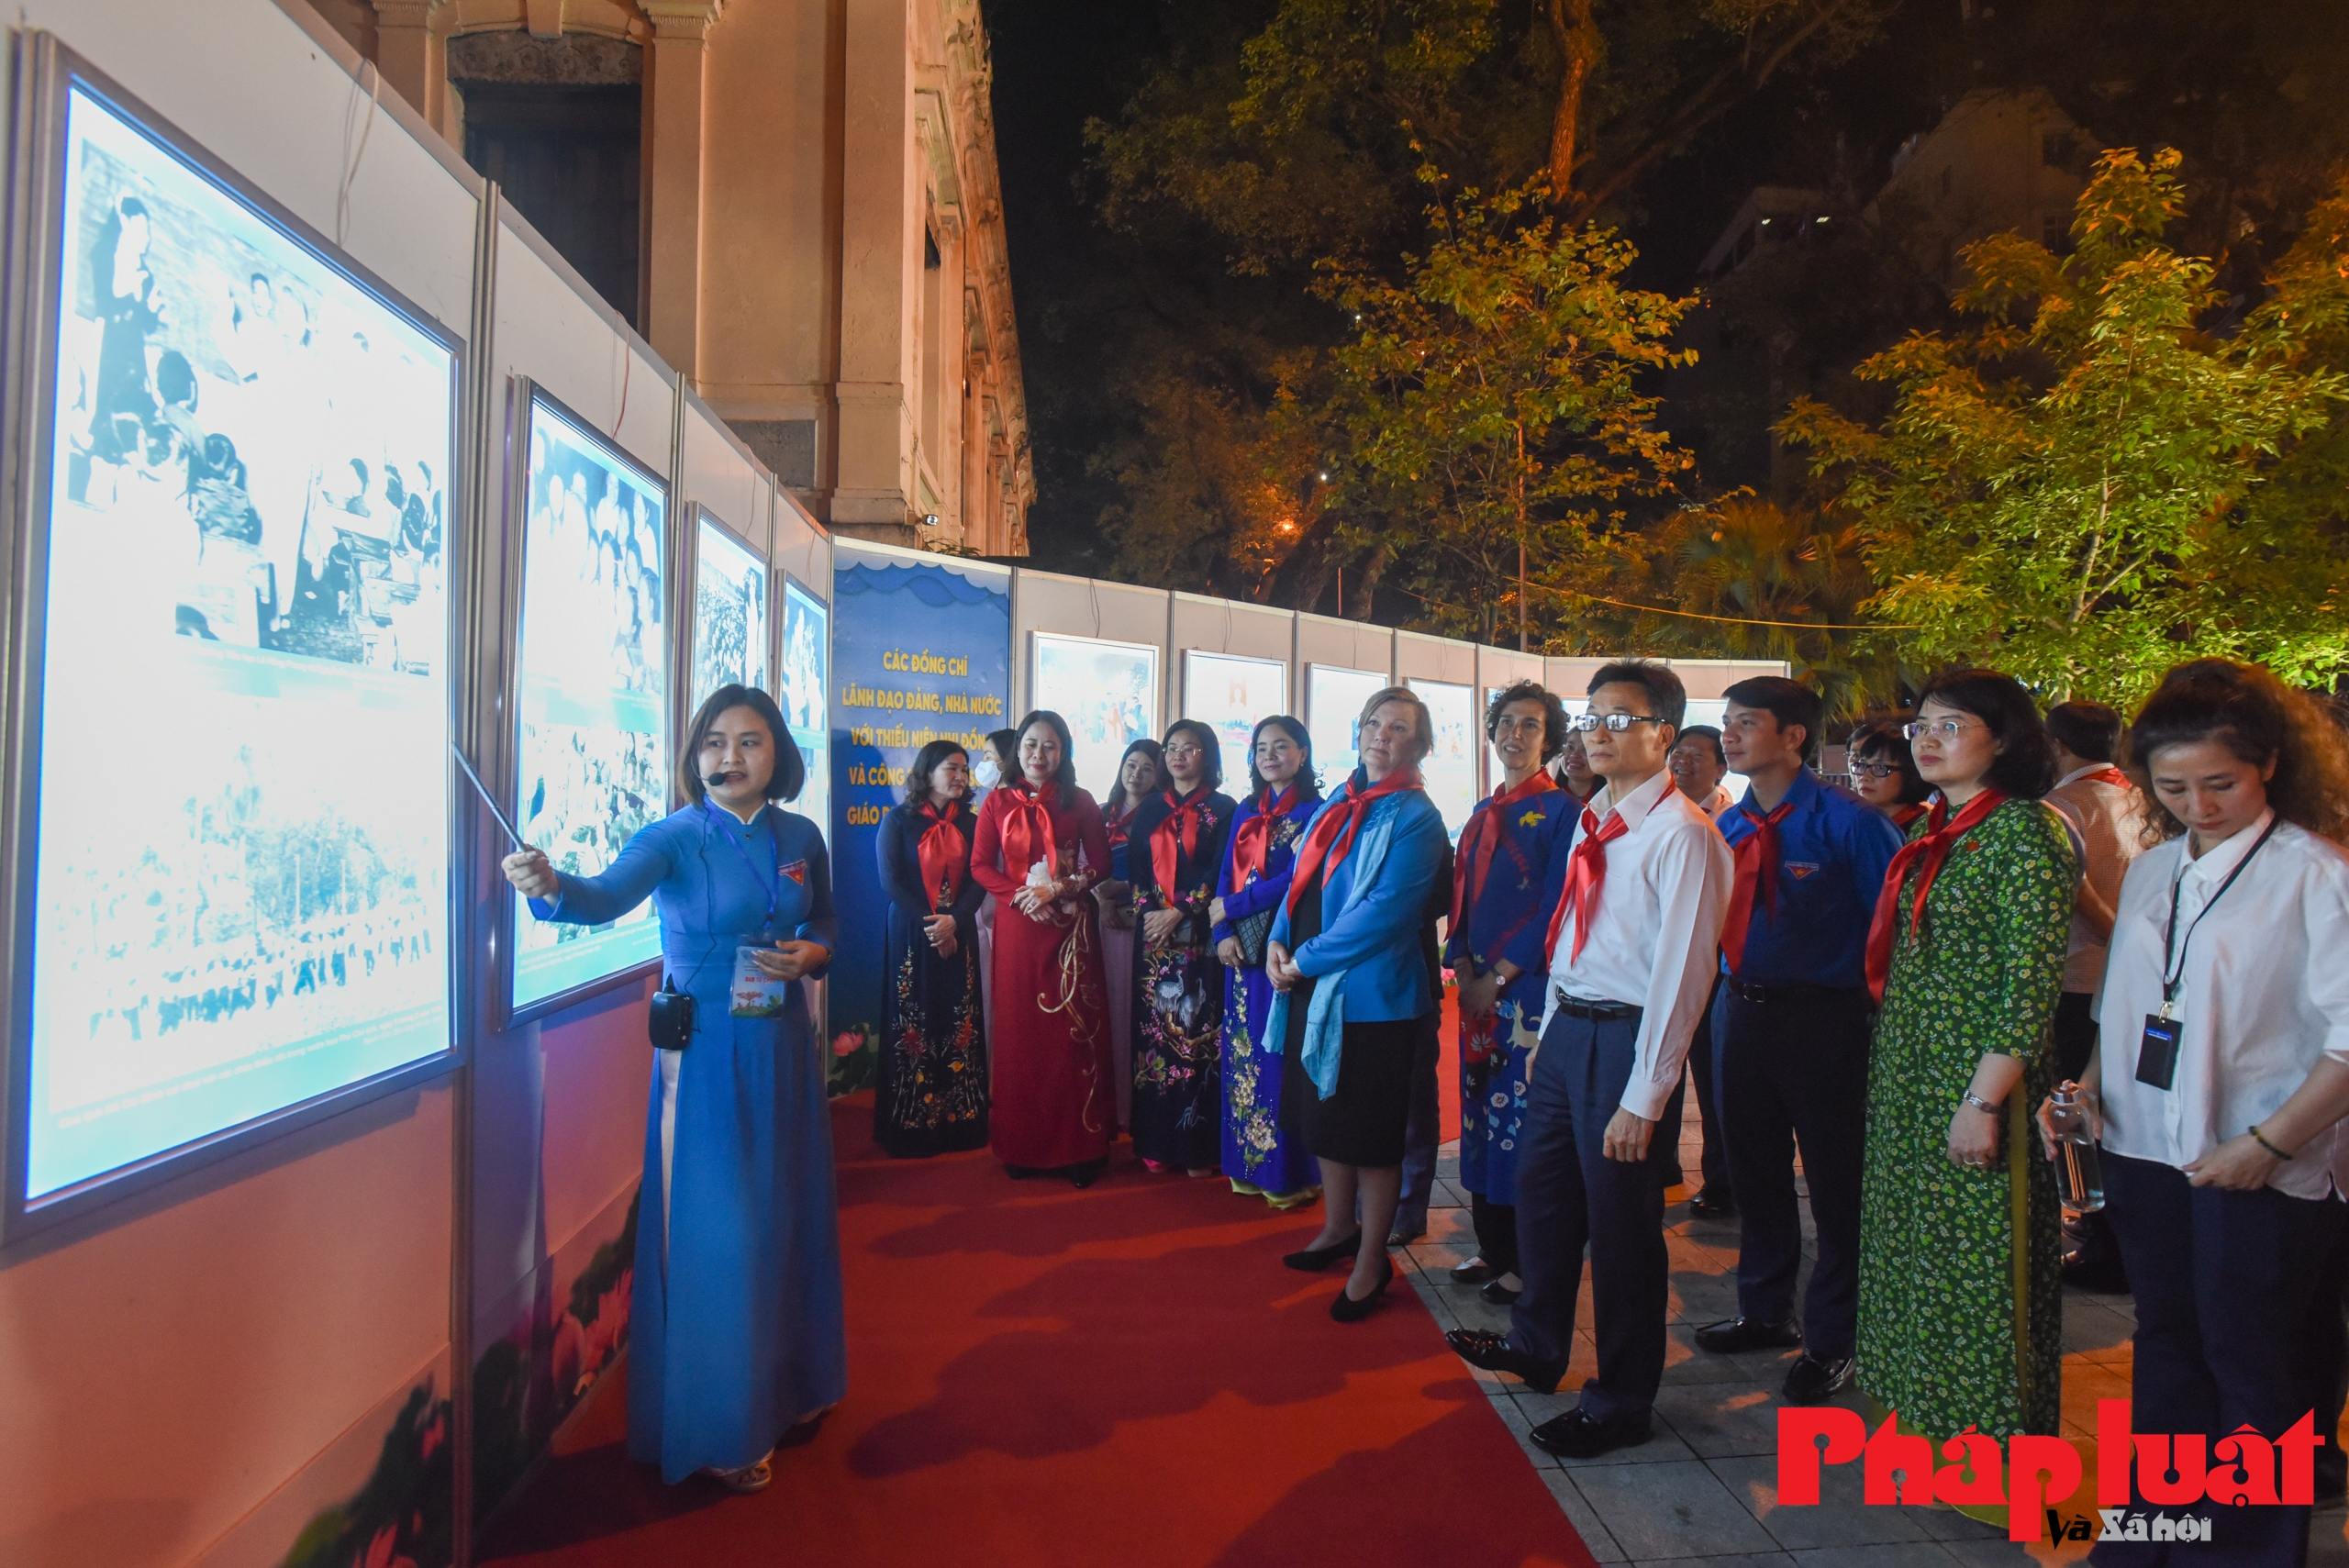 Thủ tướng Phạm Minh Chính và thông điệp hành động bằng tấm lòng, trách nhiệm với trẻ em